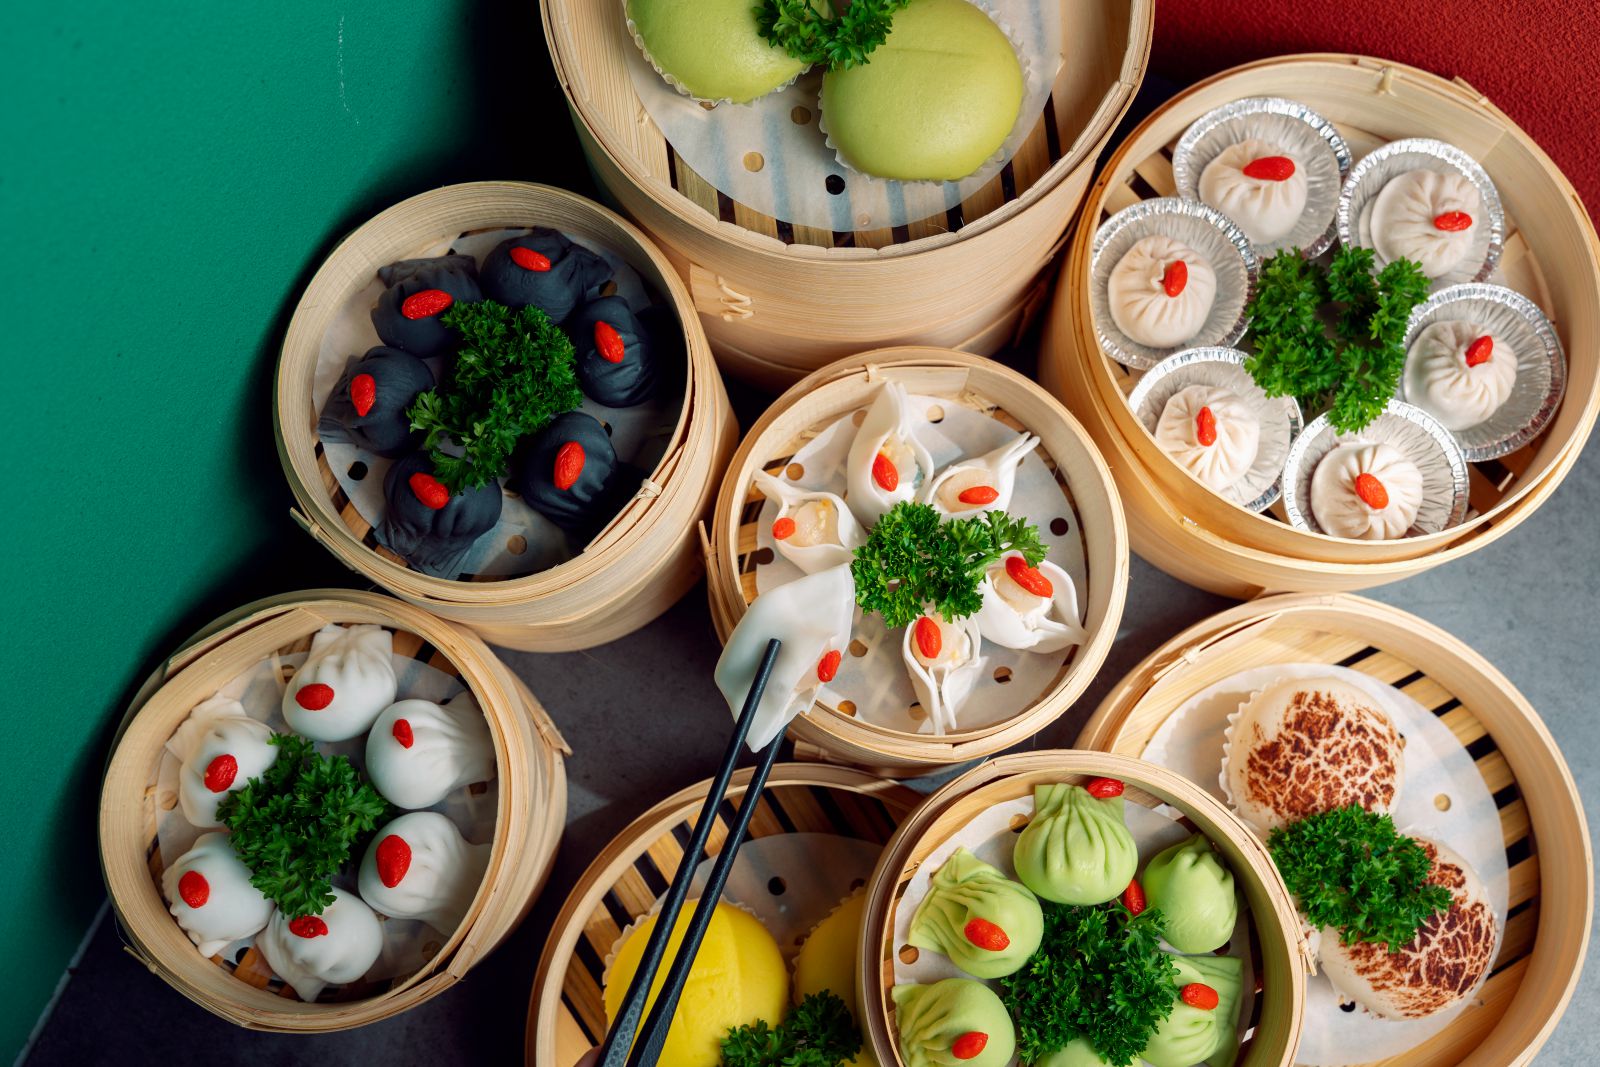 Lẩu Phan: Review hệ thống nhà hàng buffet lẩu nướng ngon ở Hà Nội